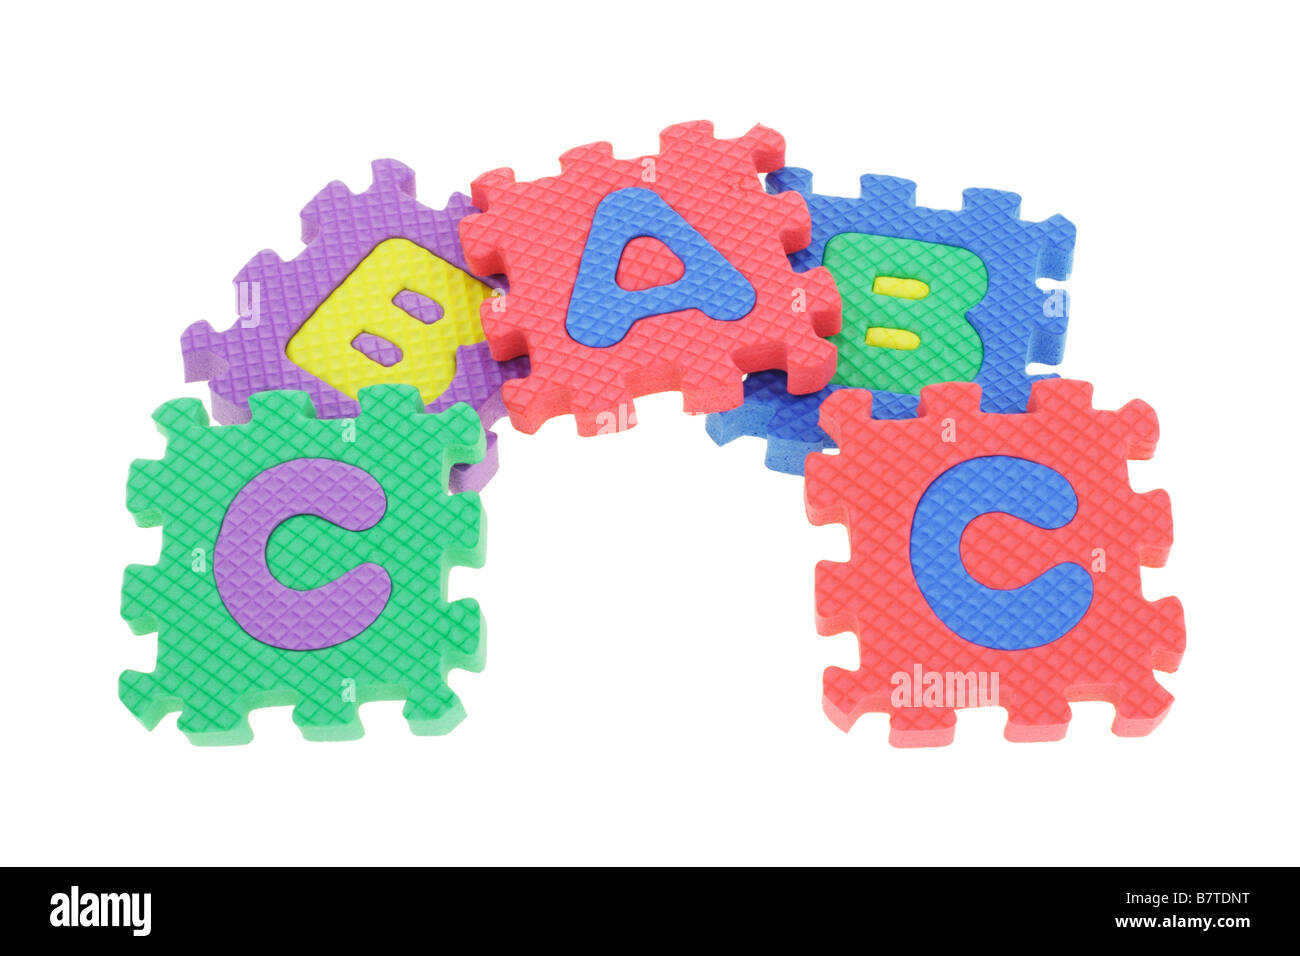 Colorful puzzle blocks arranged on white background Stock Photo